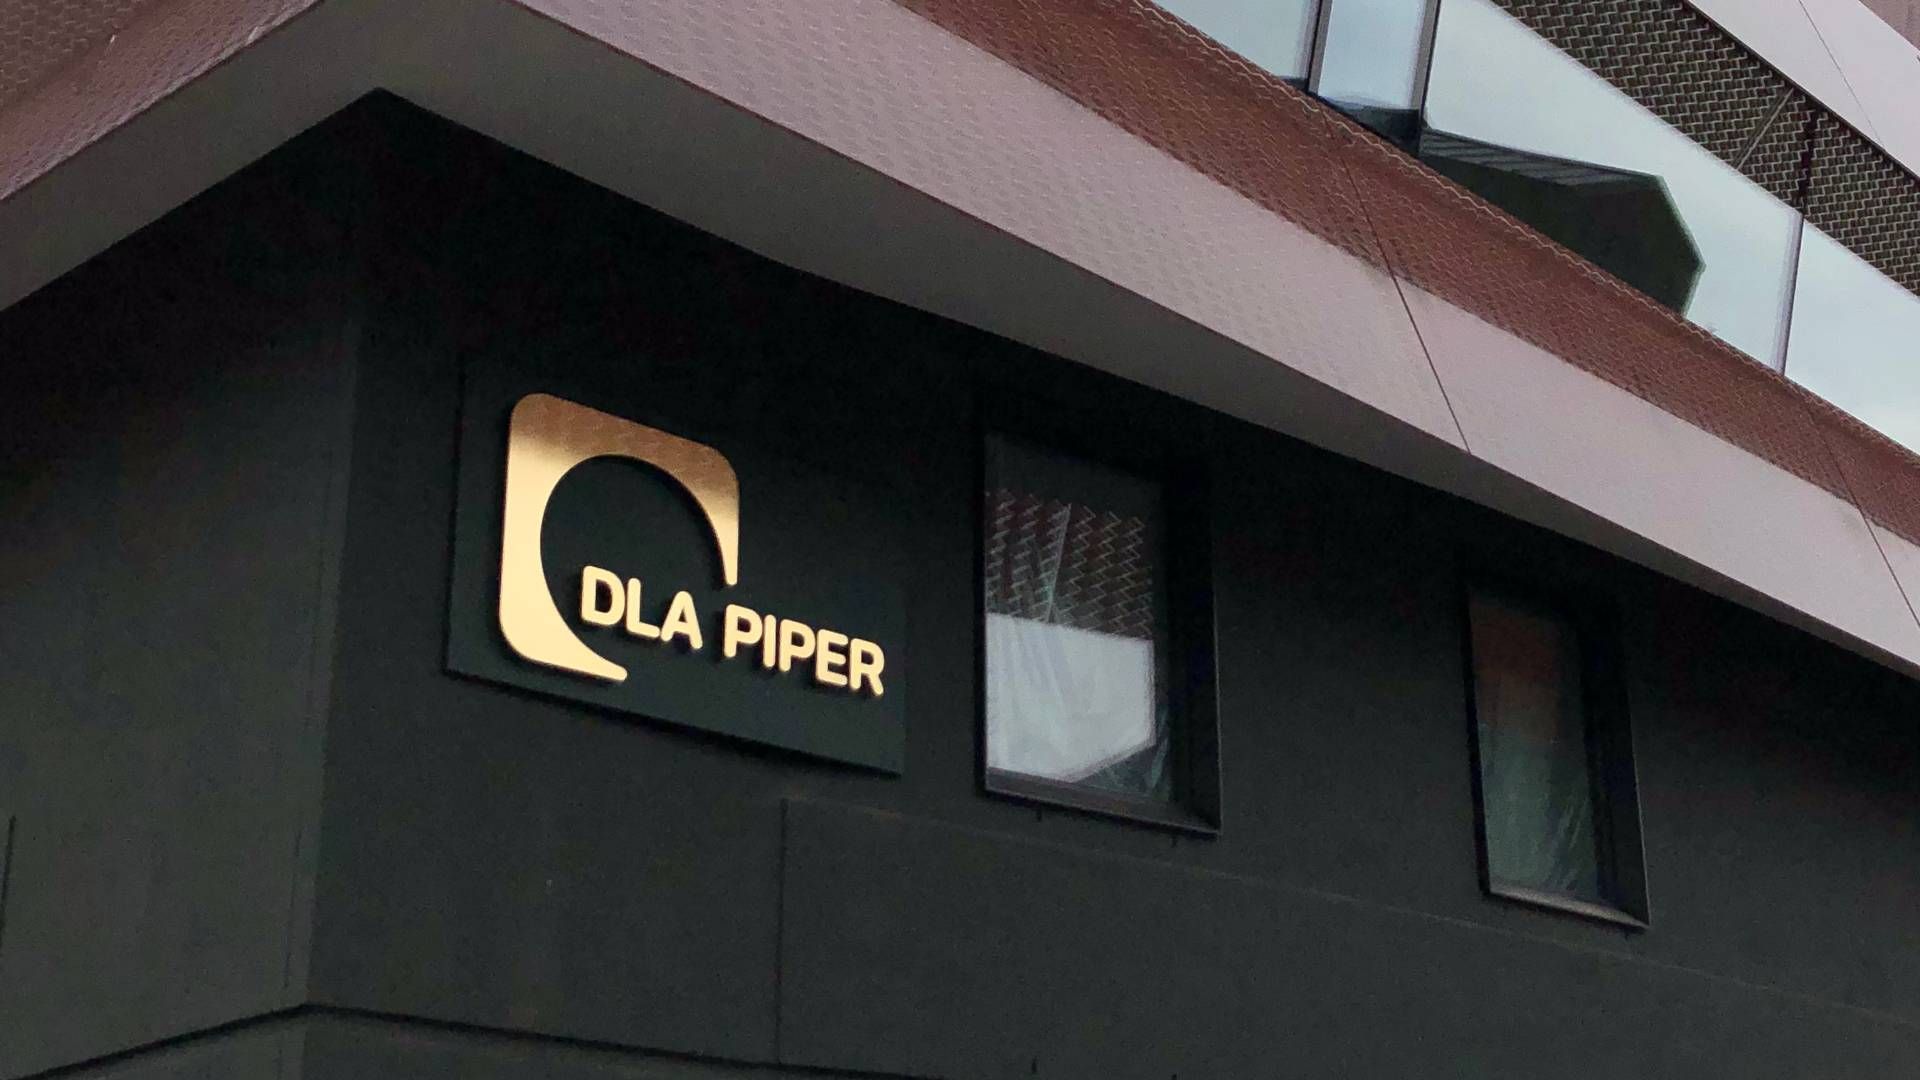 Advokaten var en del af en partnertrio, der kom til DLA Piper fra Njord i 2018. | Foto: Maiken Rønneberg